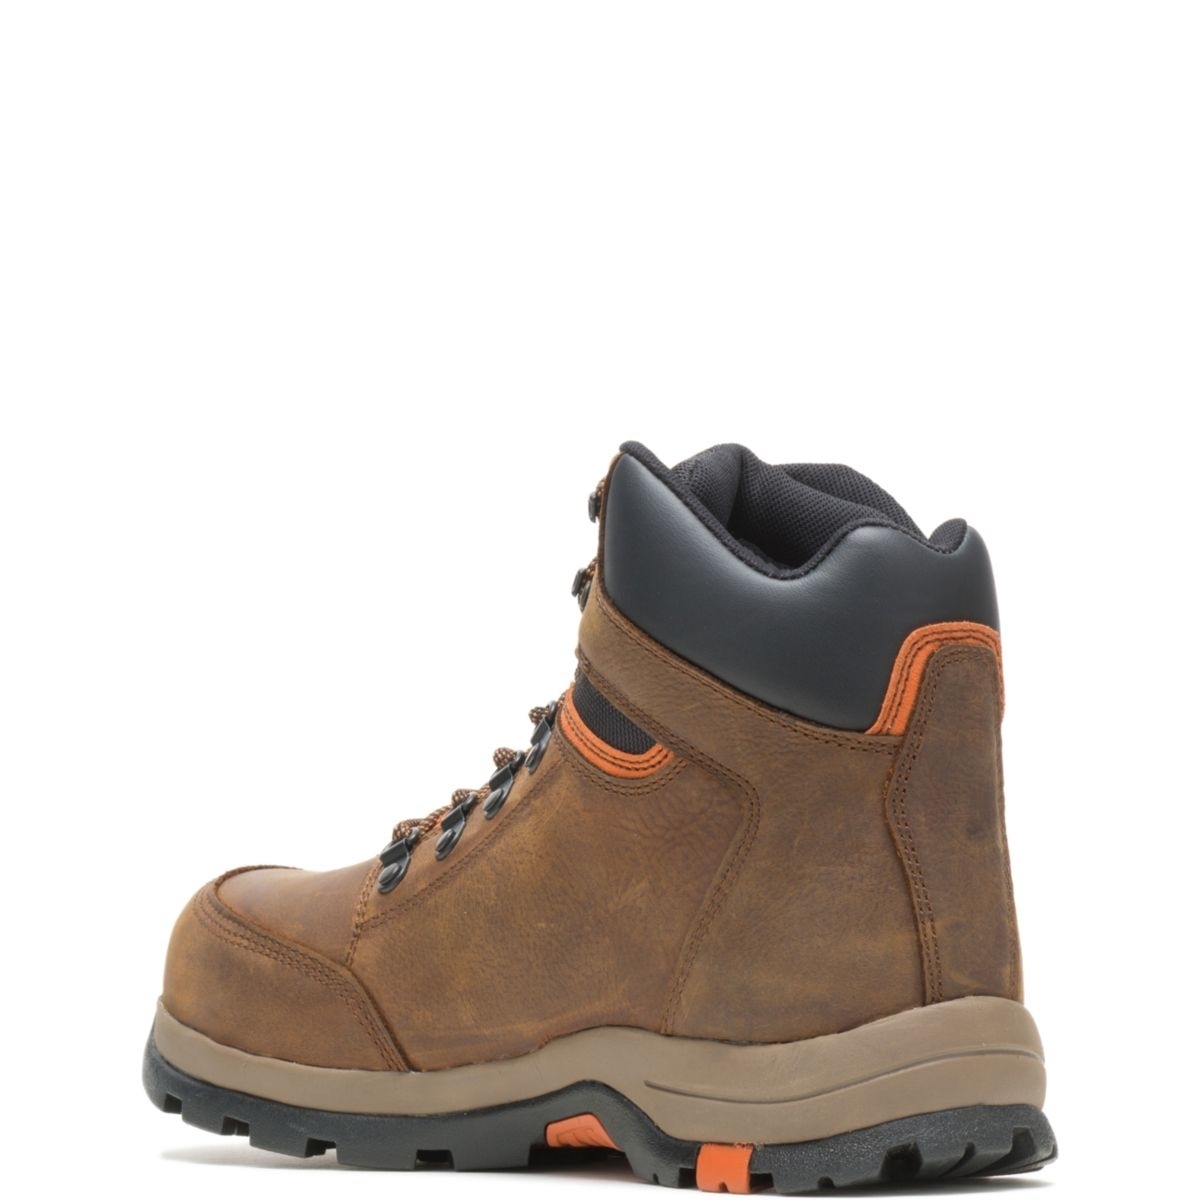 WOLVERINE Men's Grayson Steel Toe Waterproof Work Boot Brown - W211043 BROWN - BROWN, 7.5